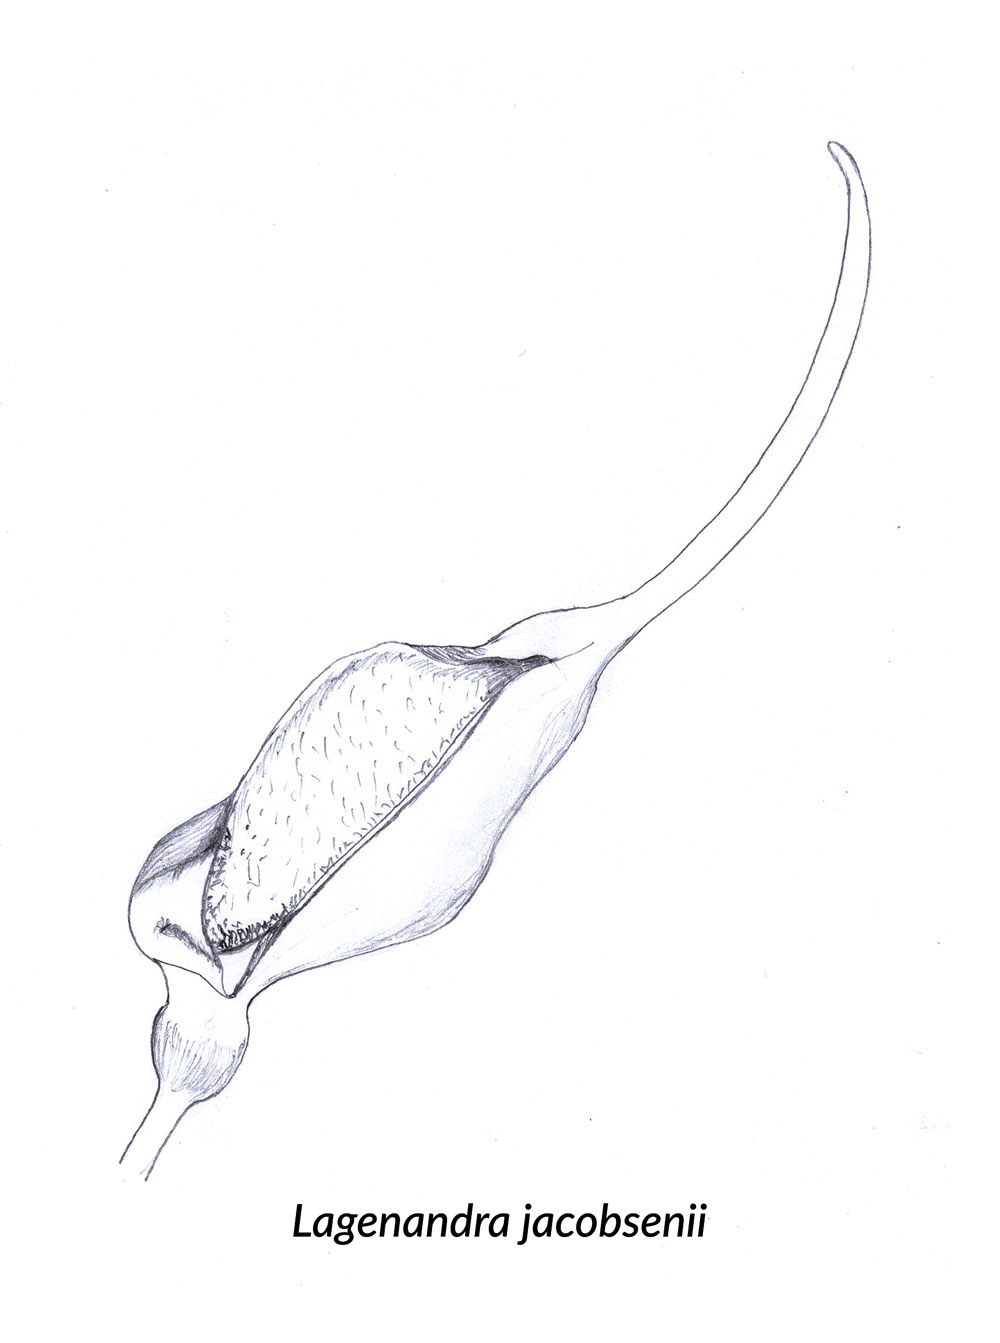 Skizze einer Spatha von Lagenandra jacobsenii